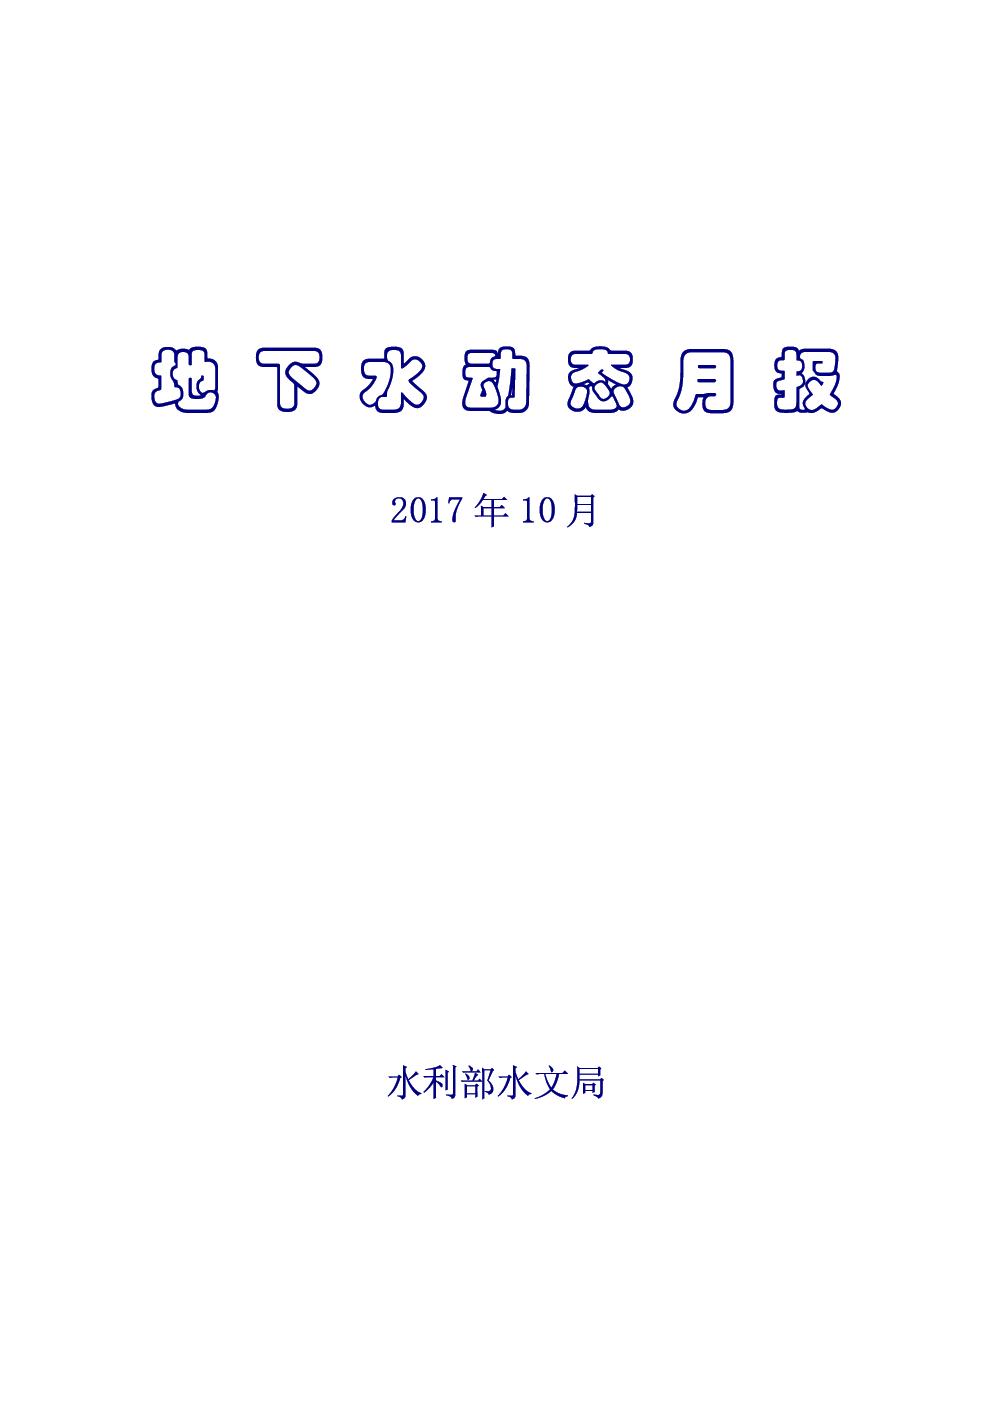 地下水月報2017_10-1.jpg